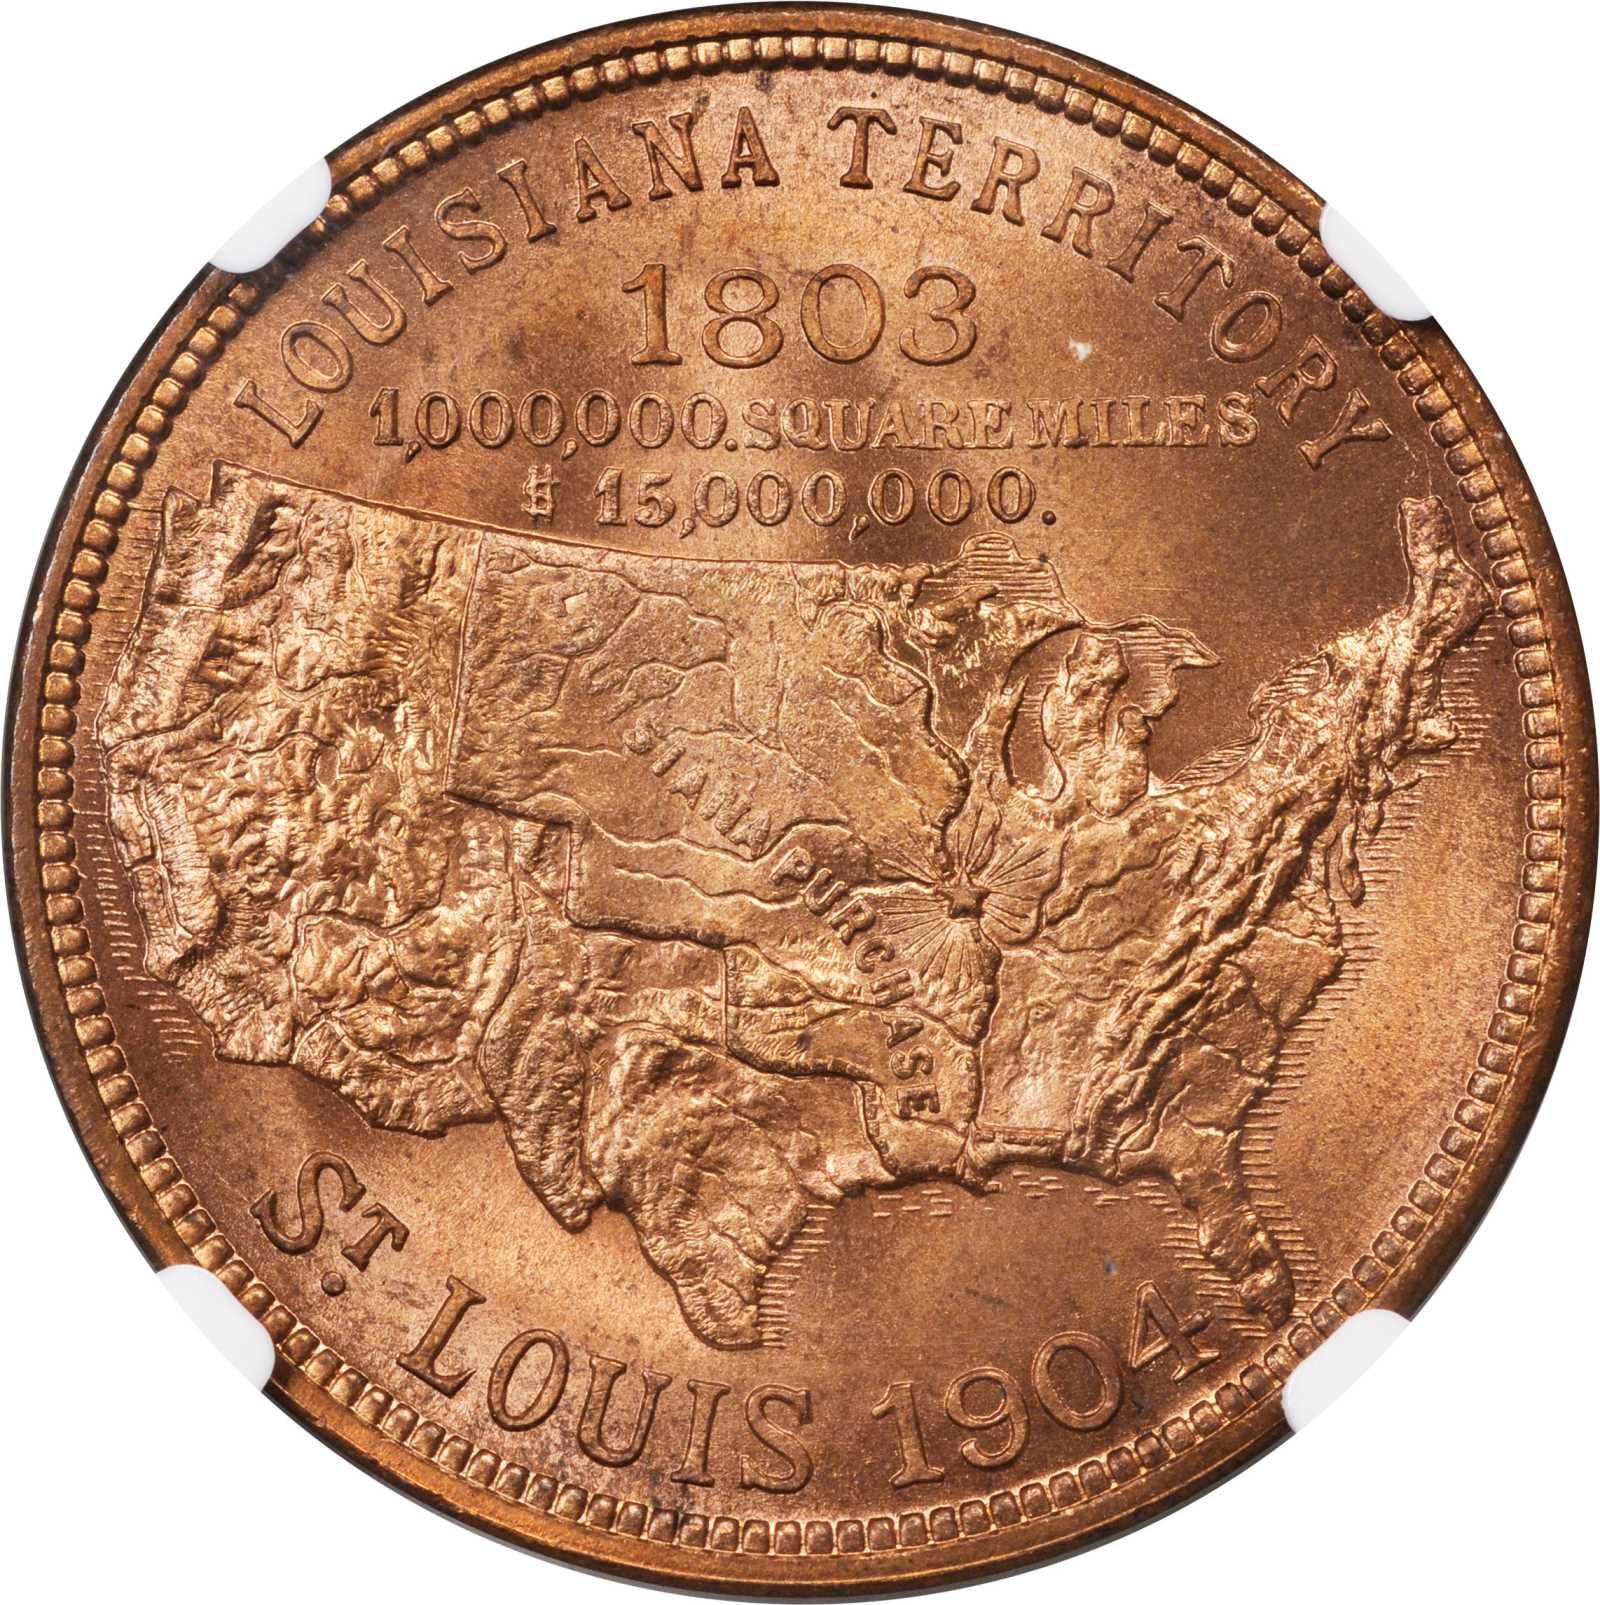 Louisiana Purchase Exposition Official Souvenir Coin Value | BestSouvenirs.CO